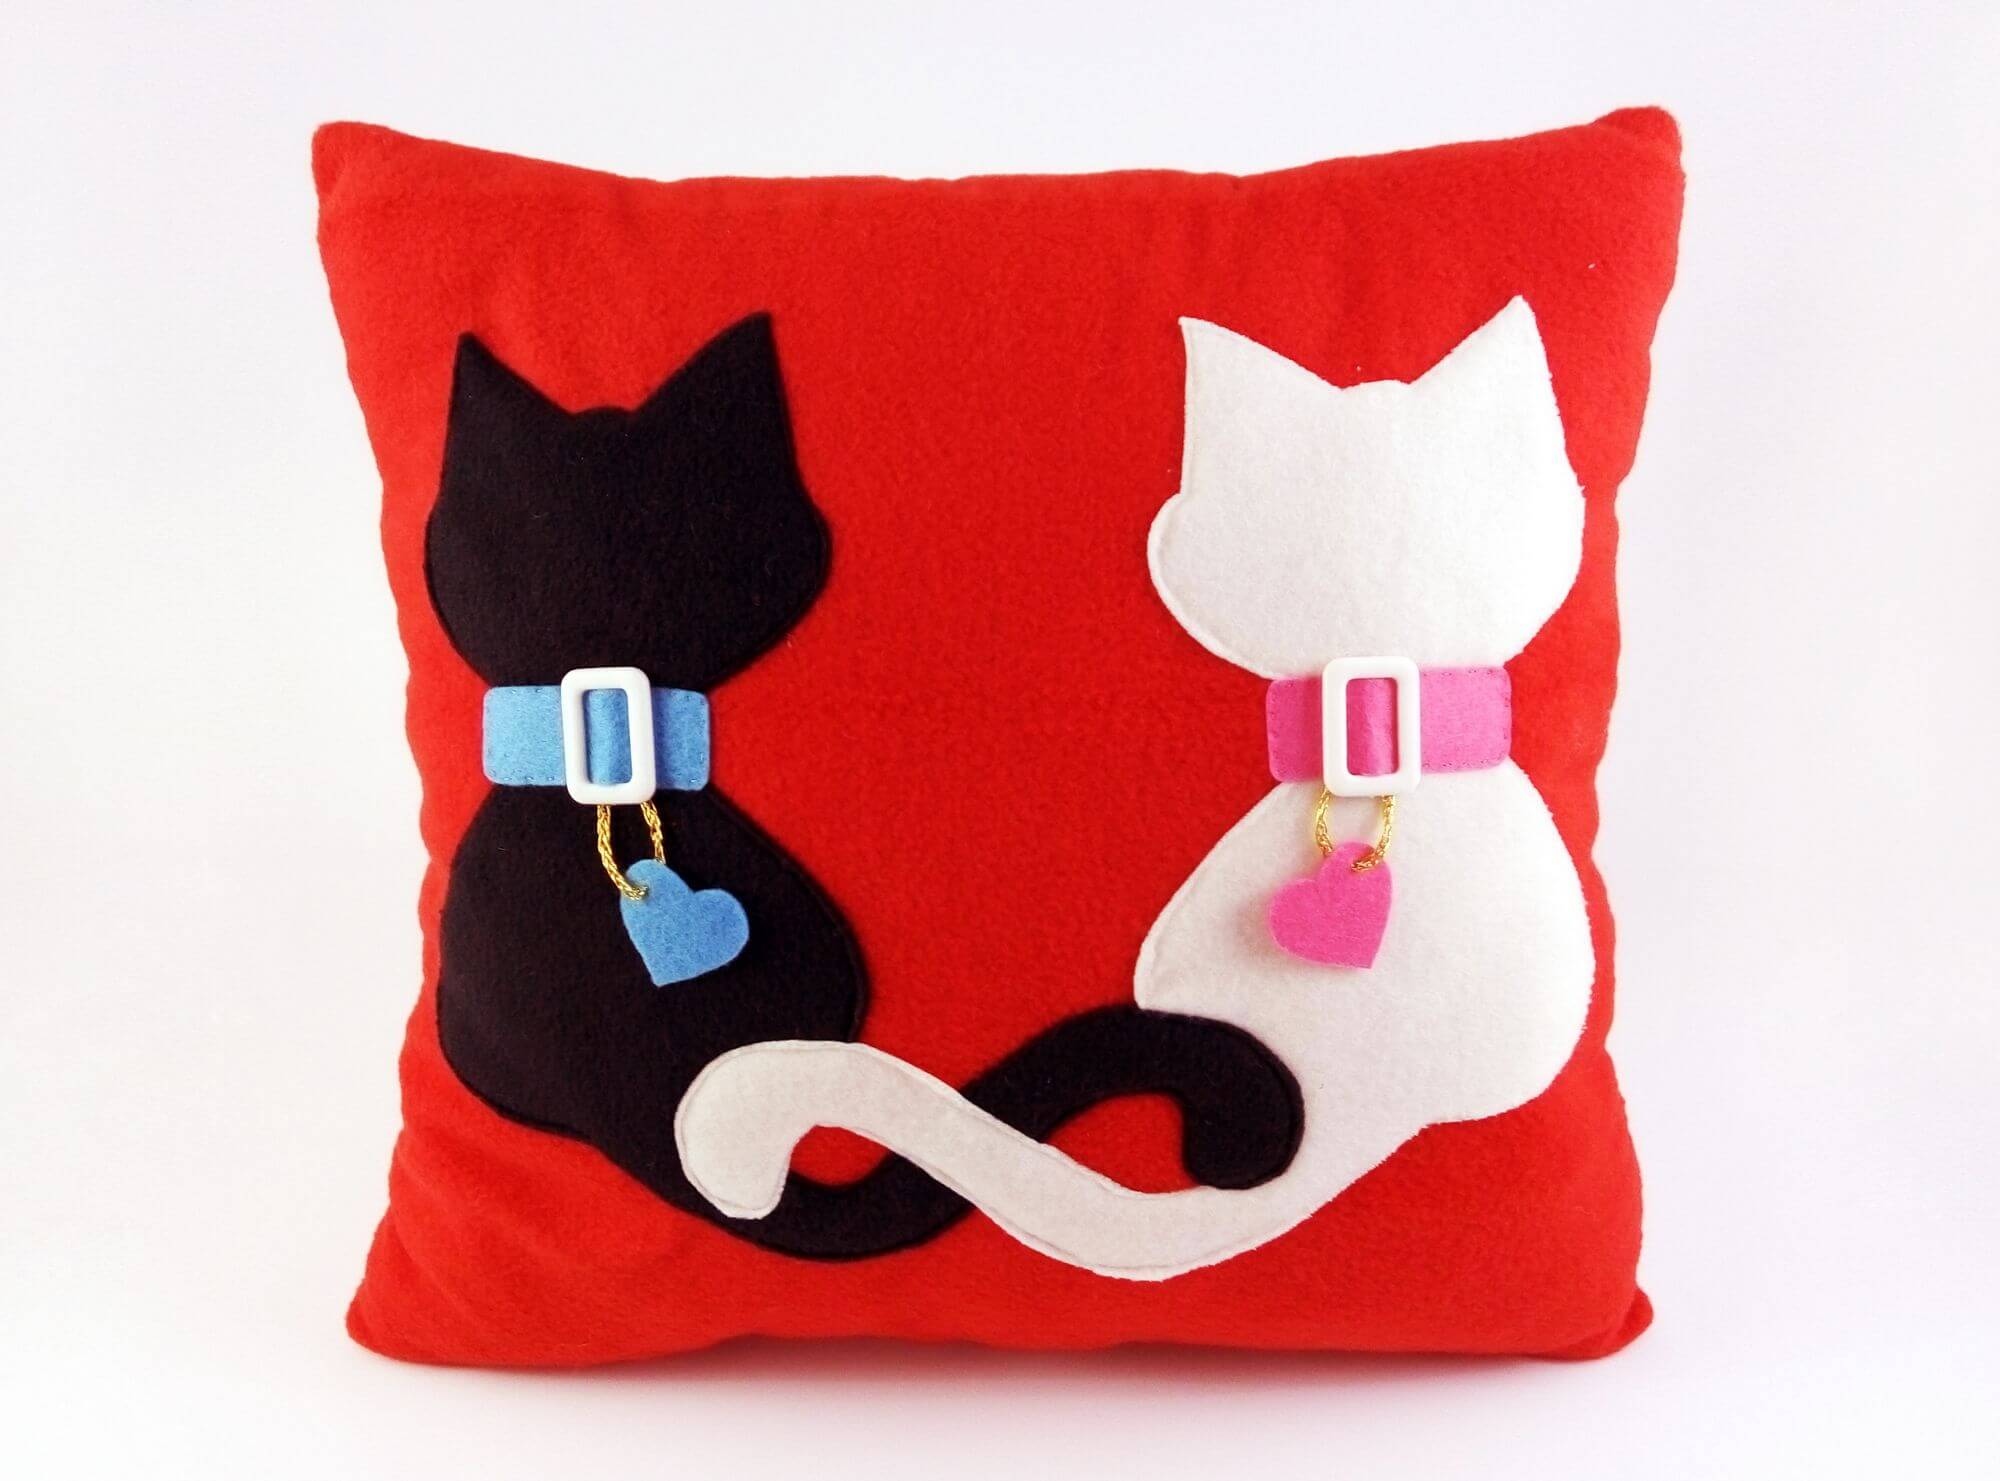 Resultado de imagen para cat pillows | cute pillows | Pinterest ...